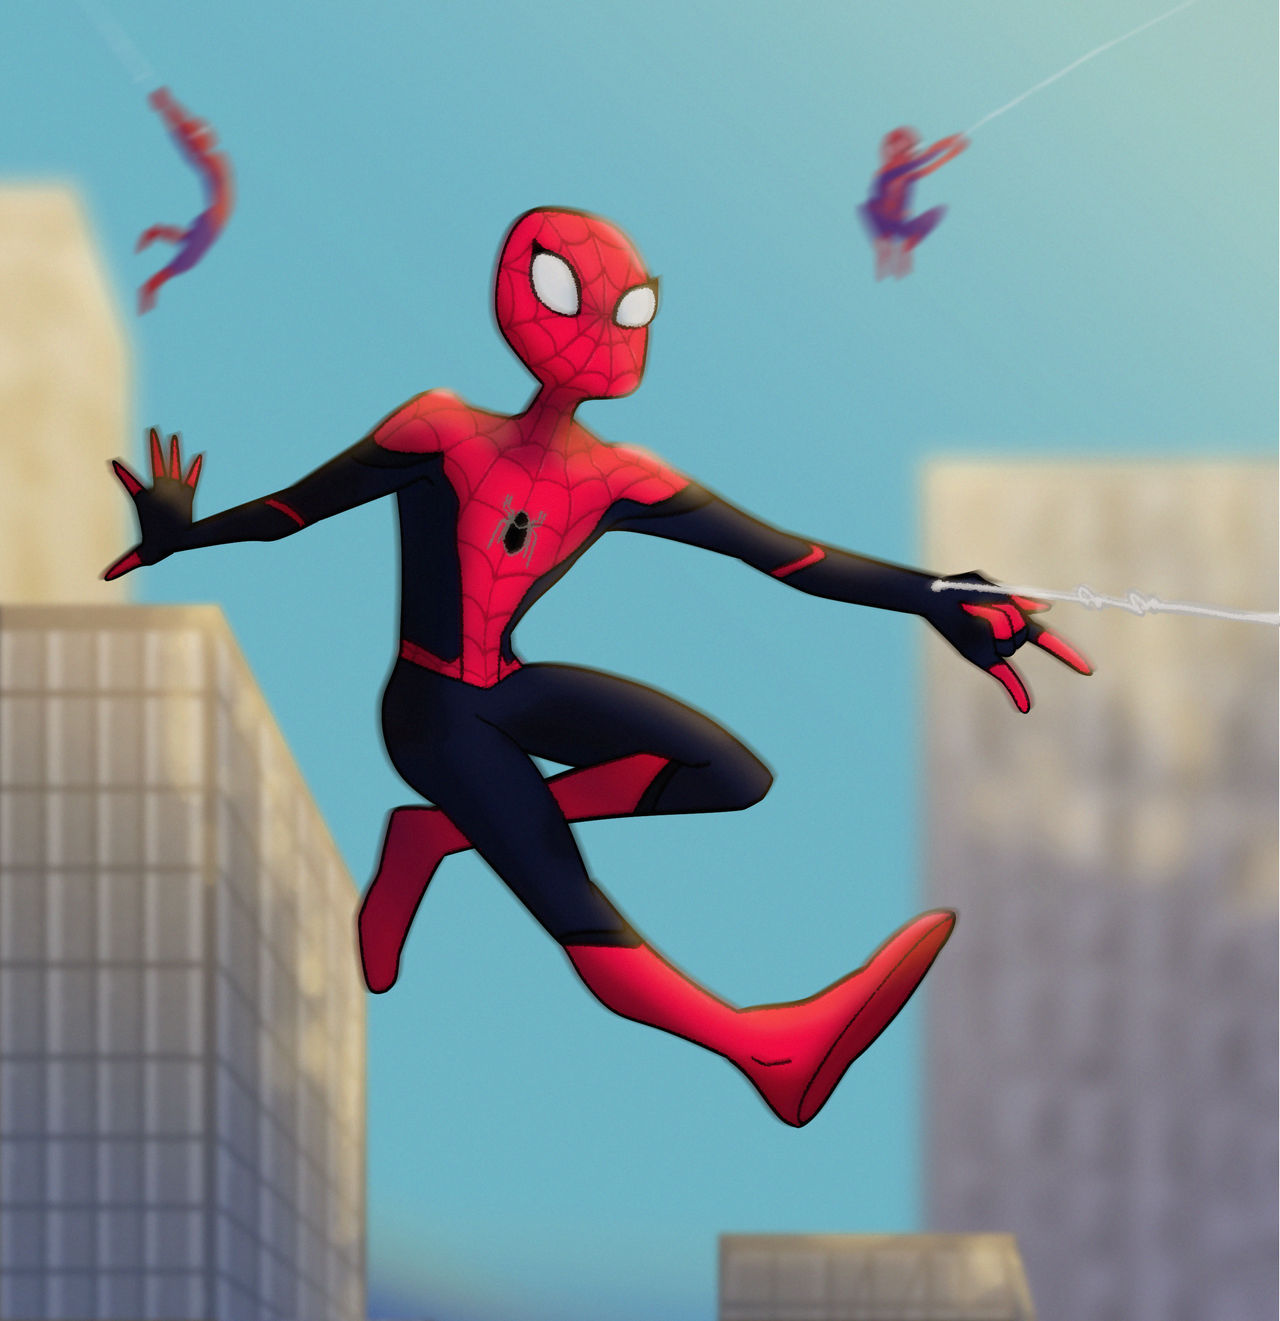 Spider Man multiverse by flocolinos on DeviantArt